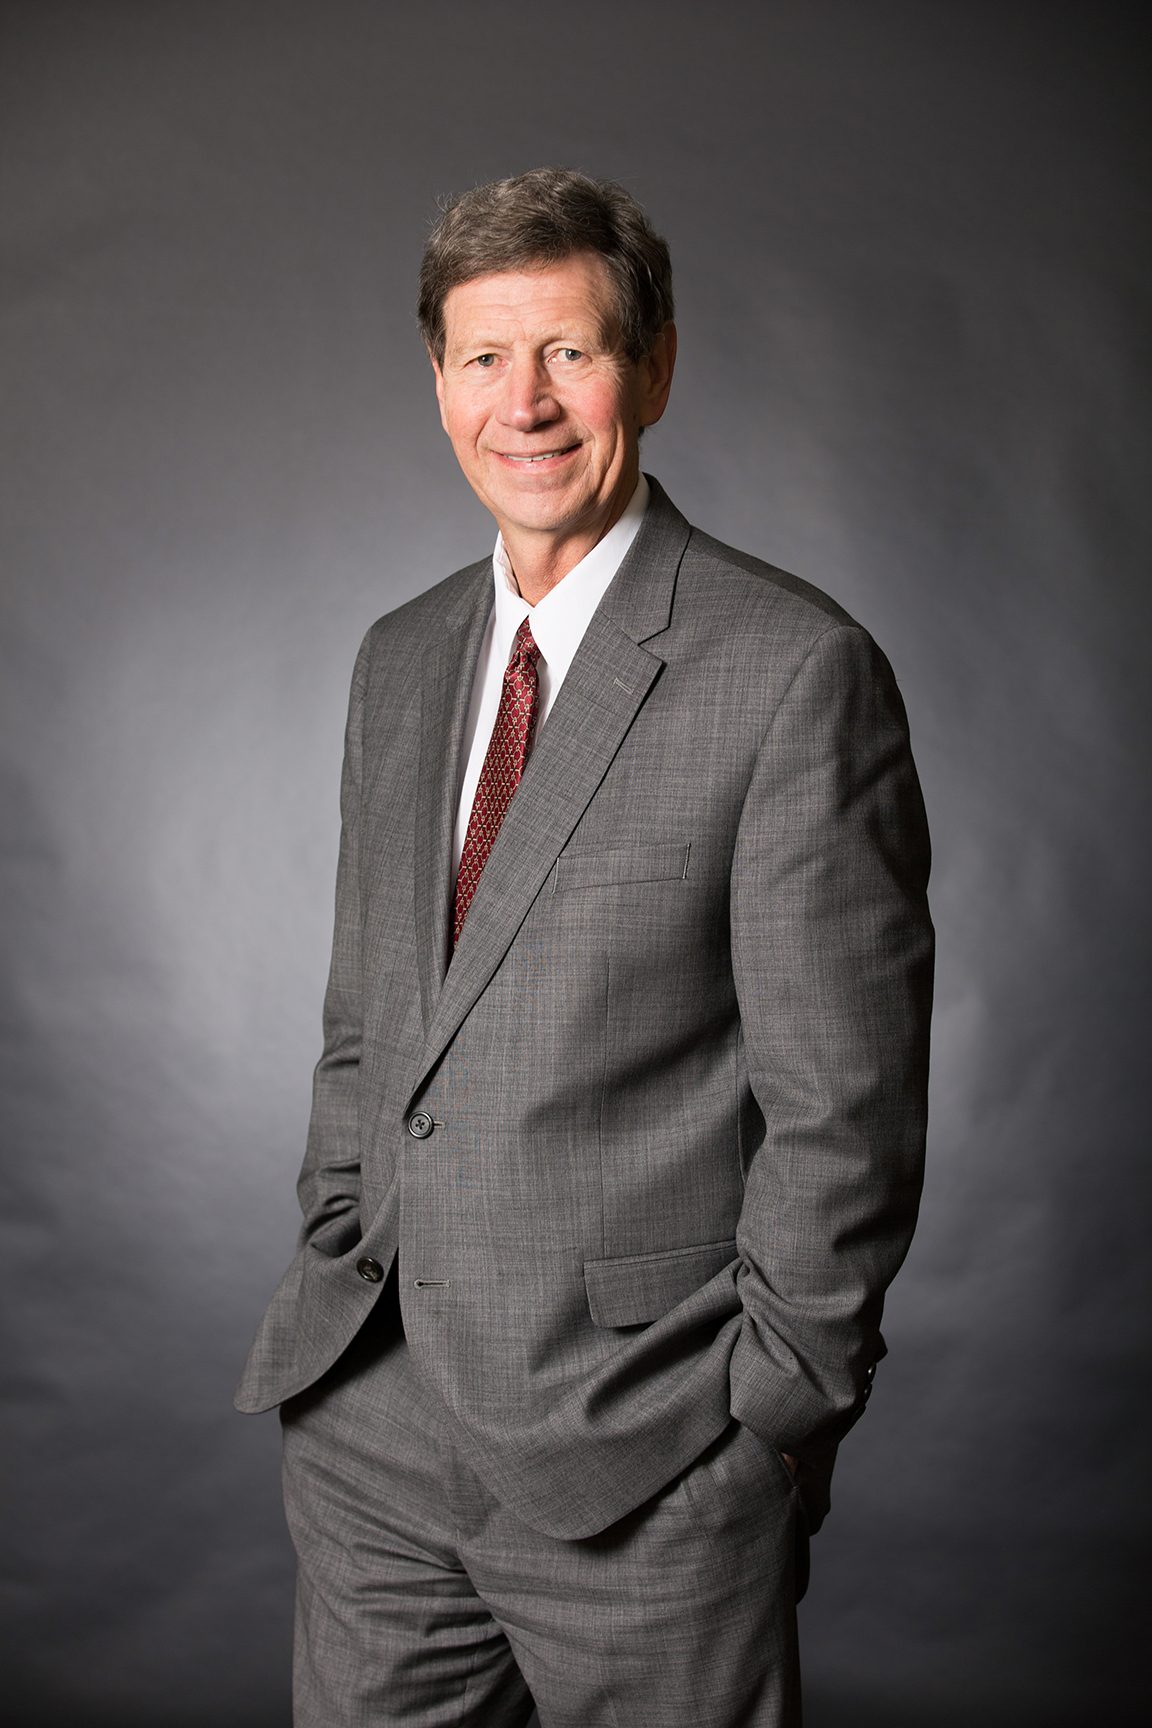 Peter VanDer Schaaf, CMT® Senior Vice President/Investments of the Vander Schaaf Team of Stifel